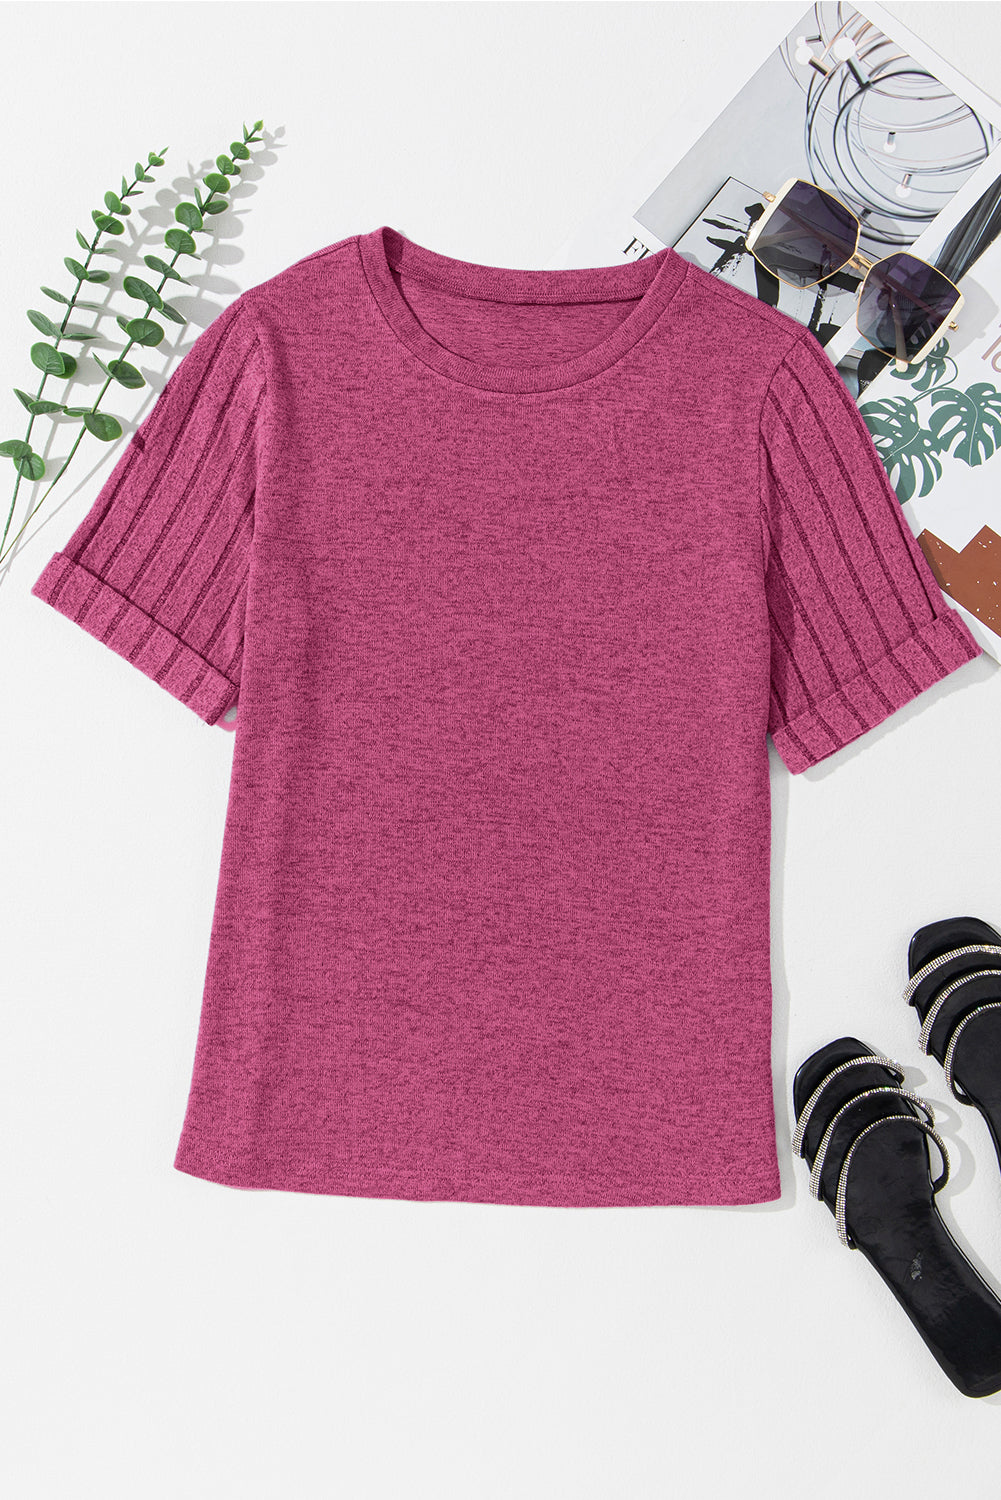 T-shirt girocollo con maniche a coste rosa brillante